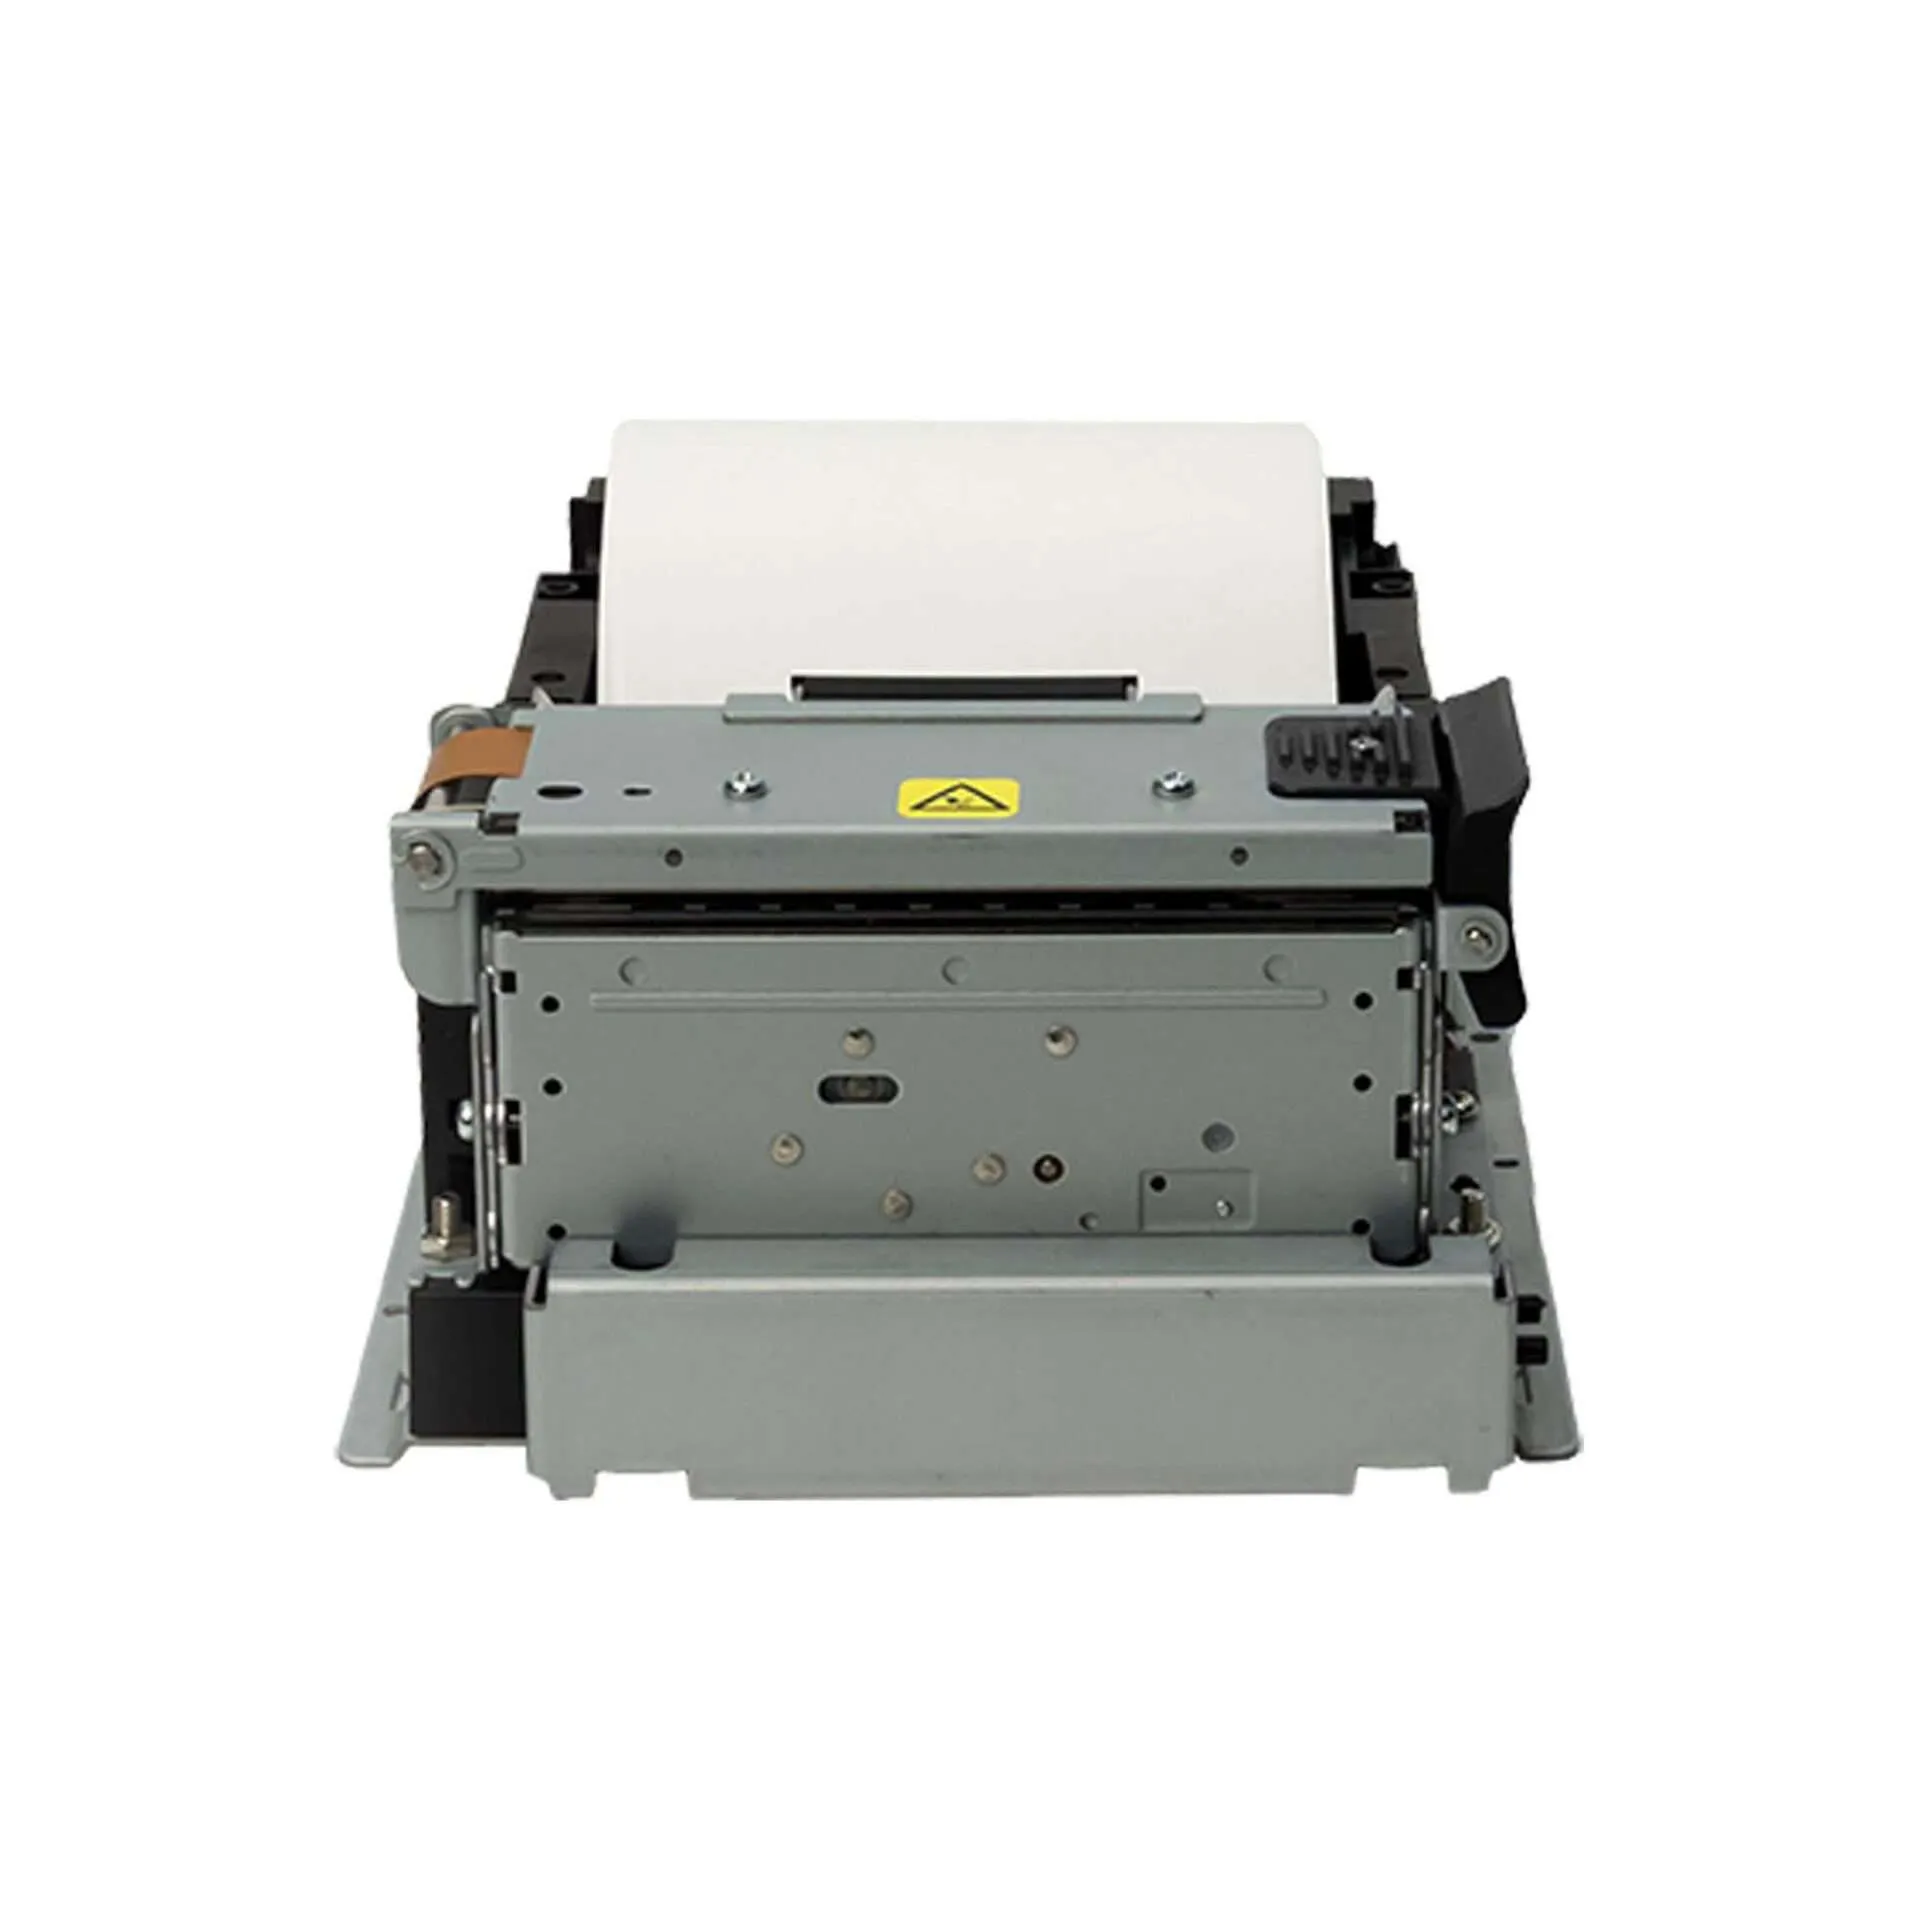 SK1-321 Kiosk Printer